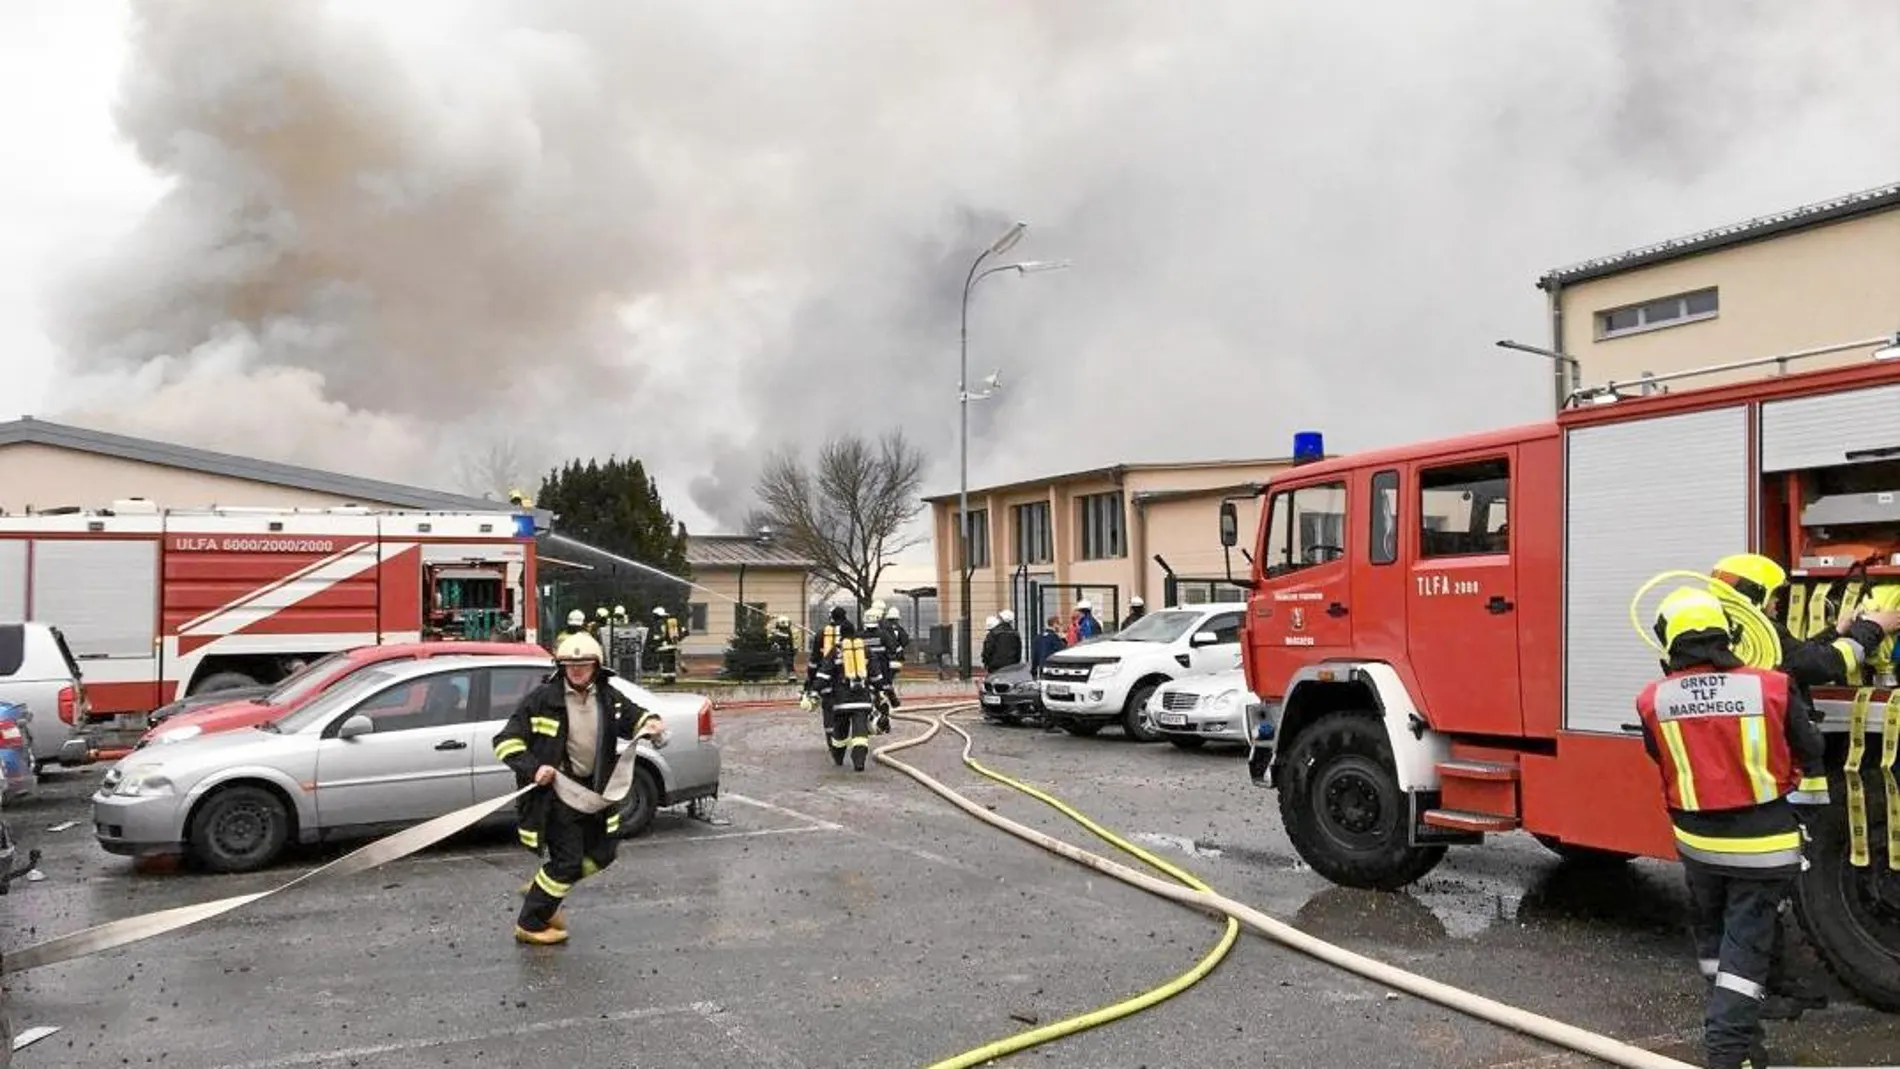 Una explosión en la planta de Baumgarten, en el Este de Austria, dejó ayer sin suministro de gas ruso a Italia